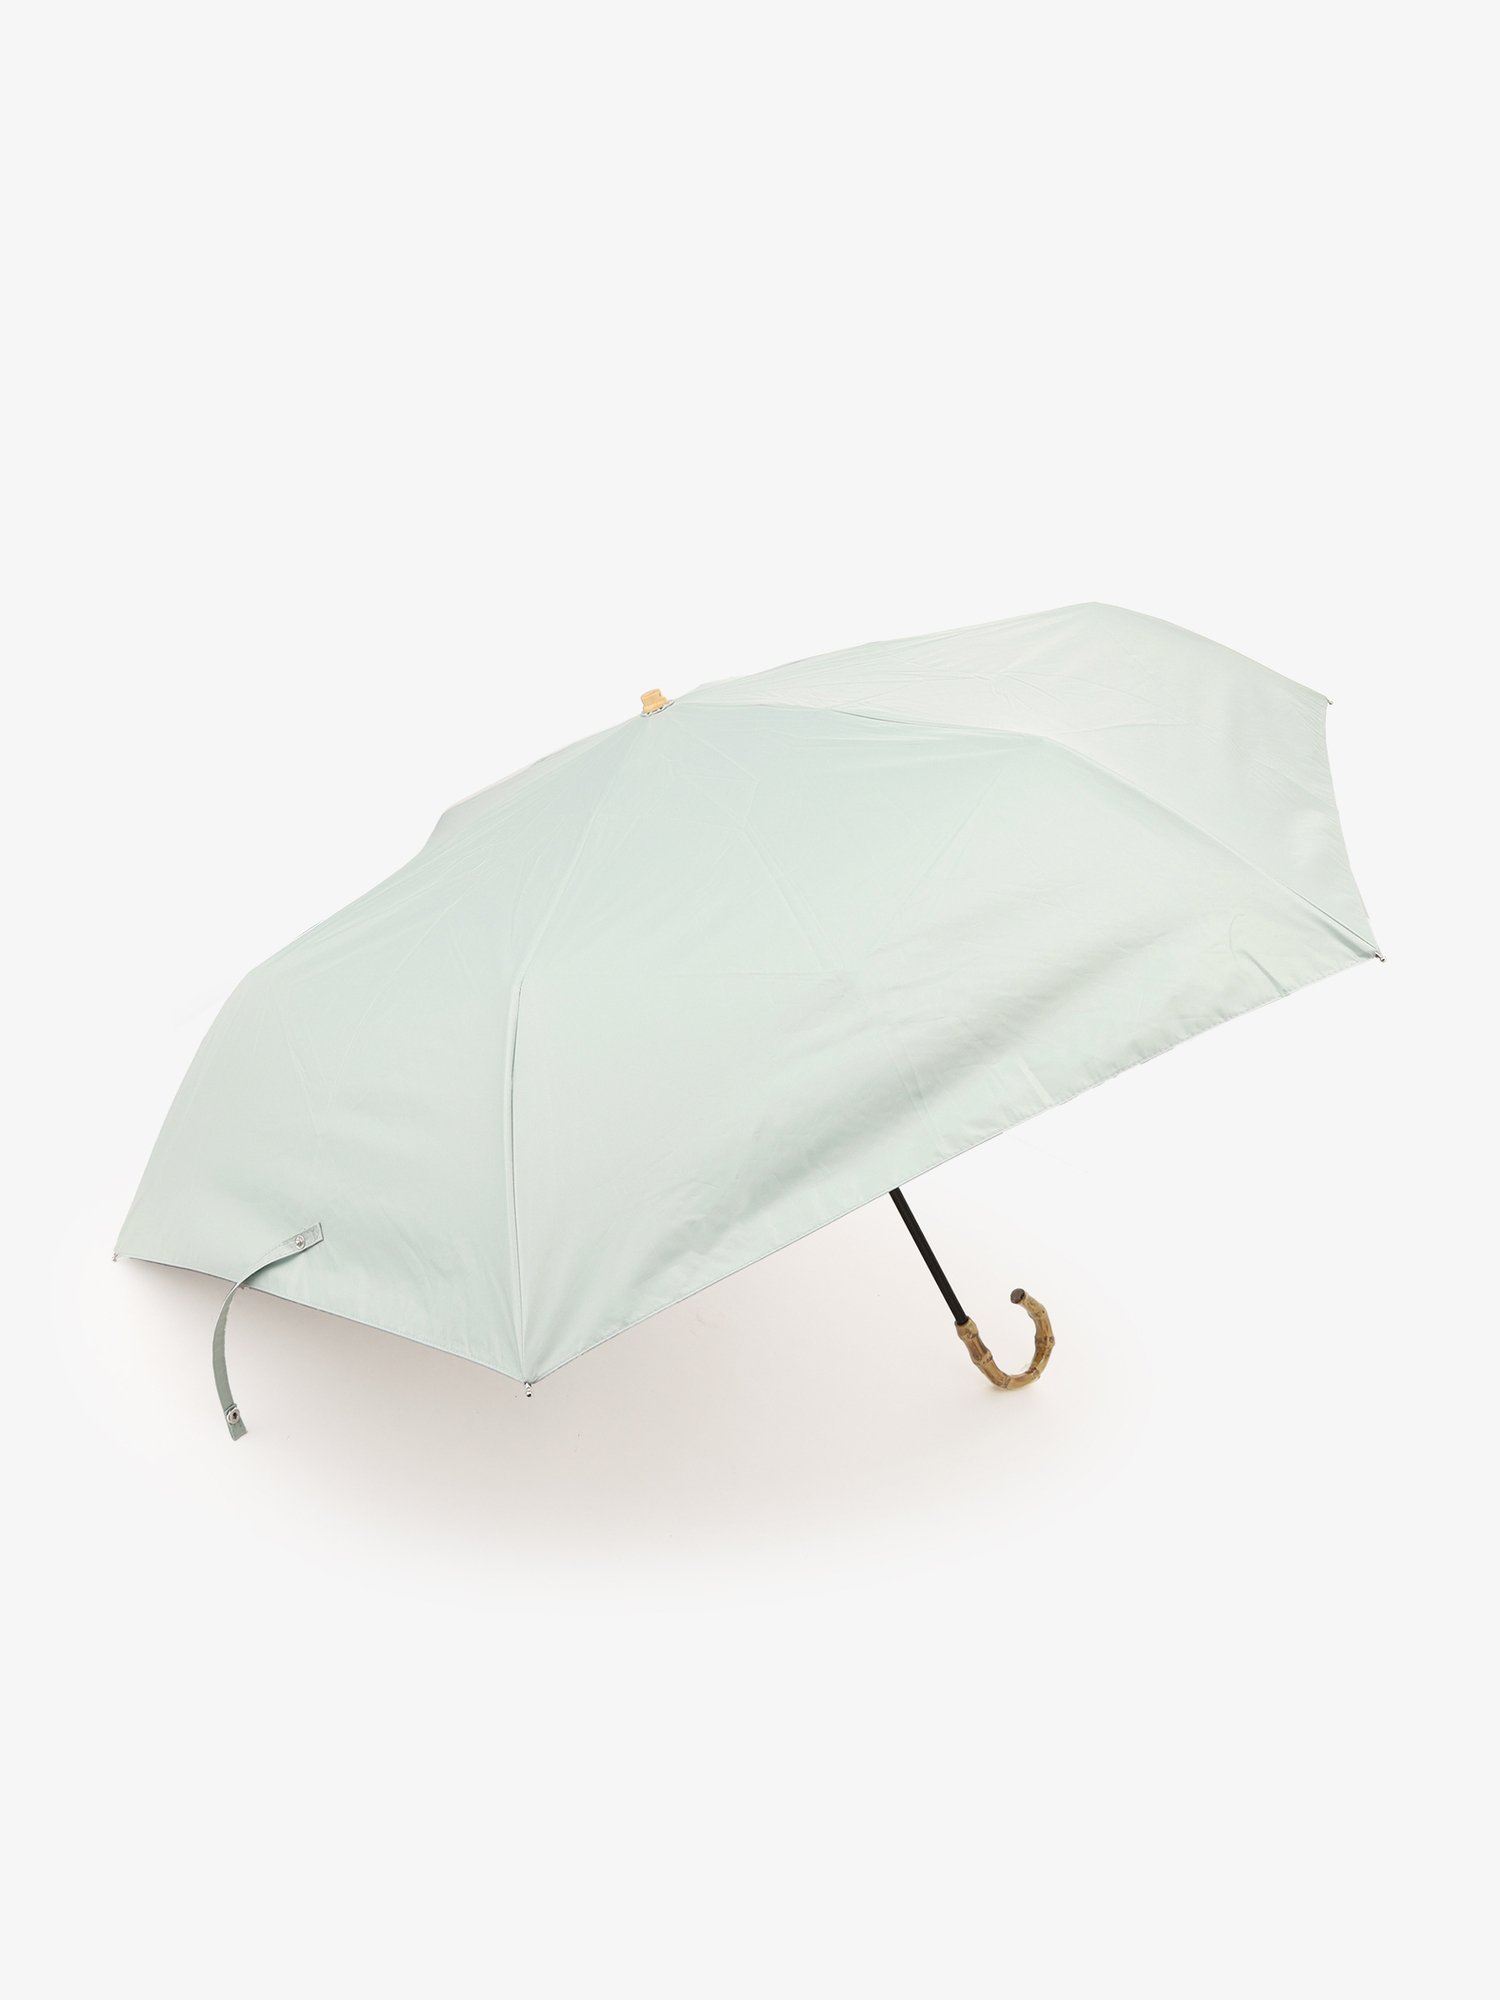 プレーンラージ晴雨兼用折りたたみ傘日傘